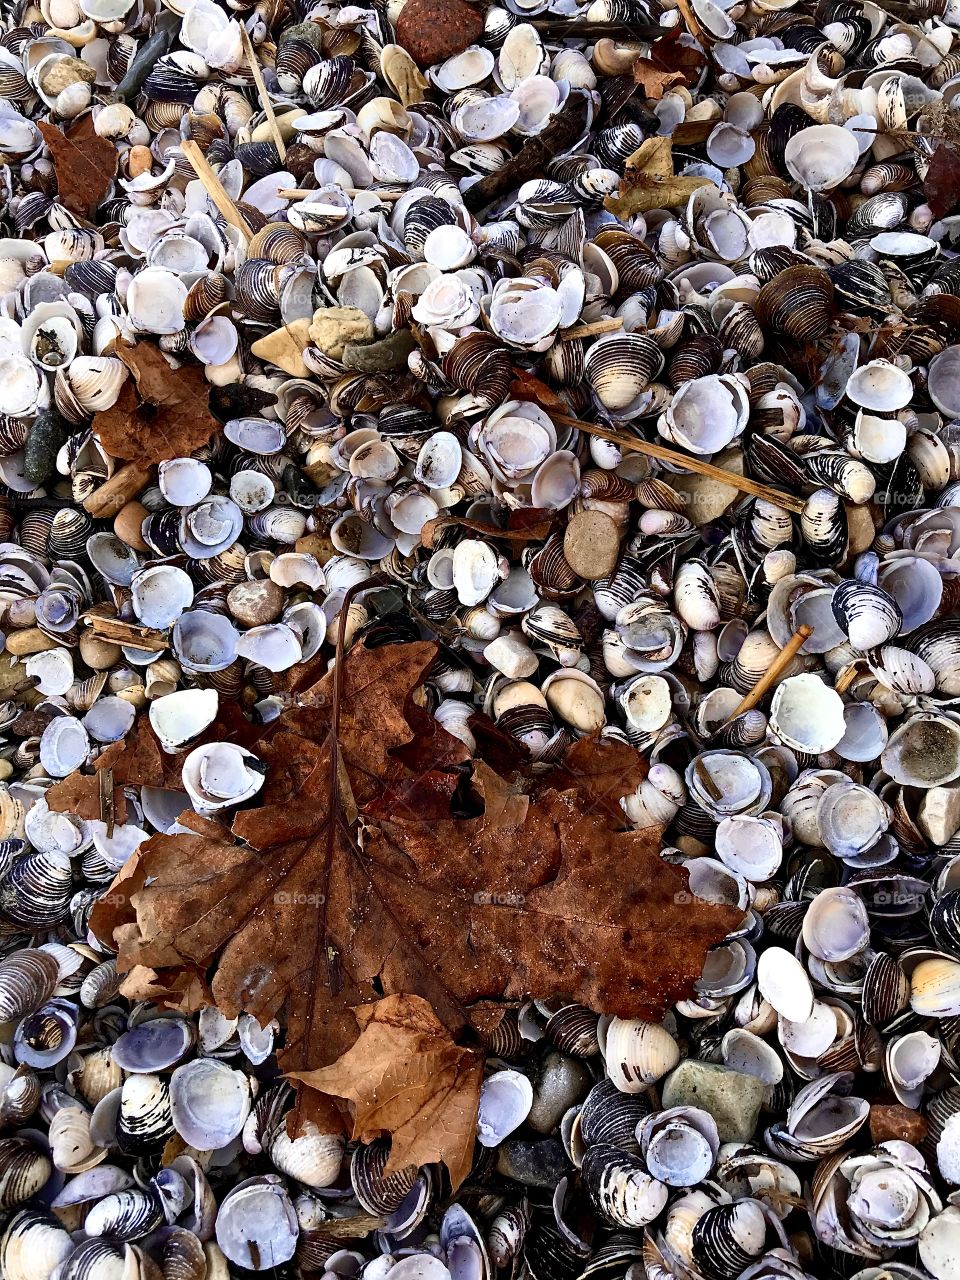 Autumn leaf on the beach 